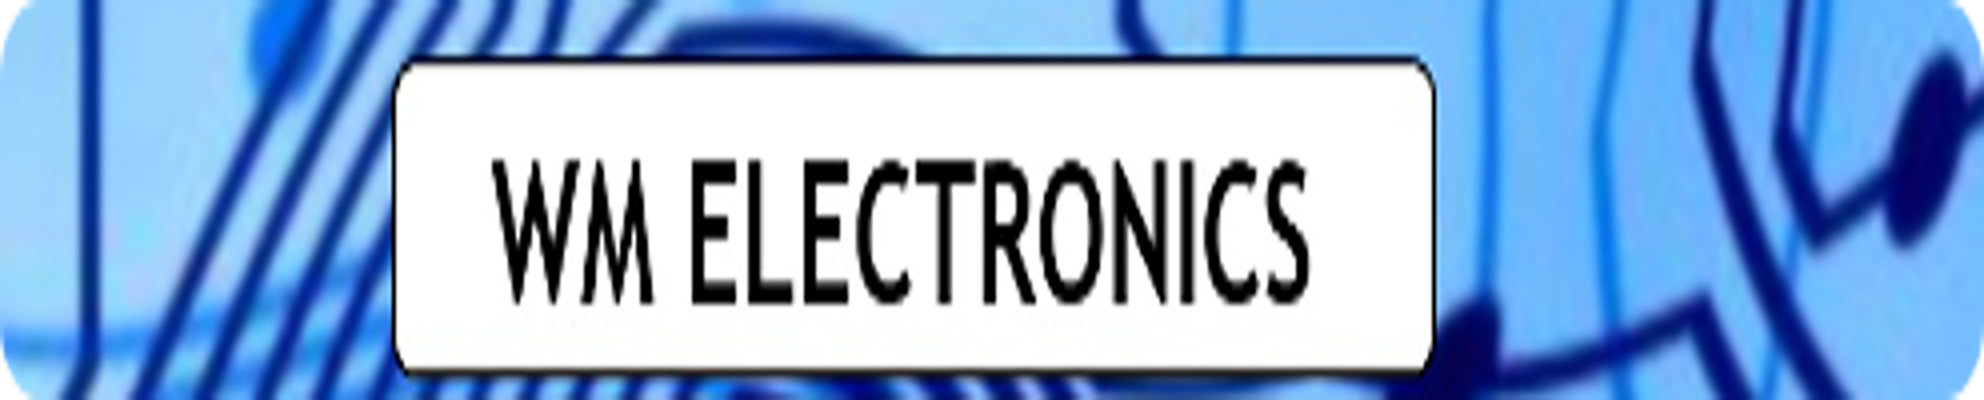 WM Electronics